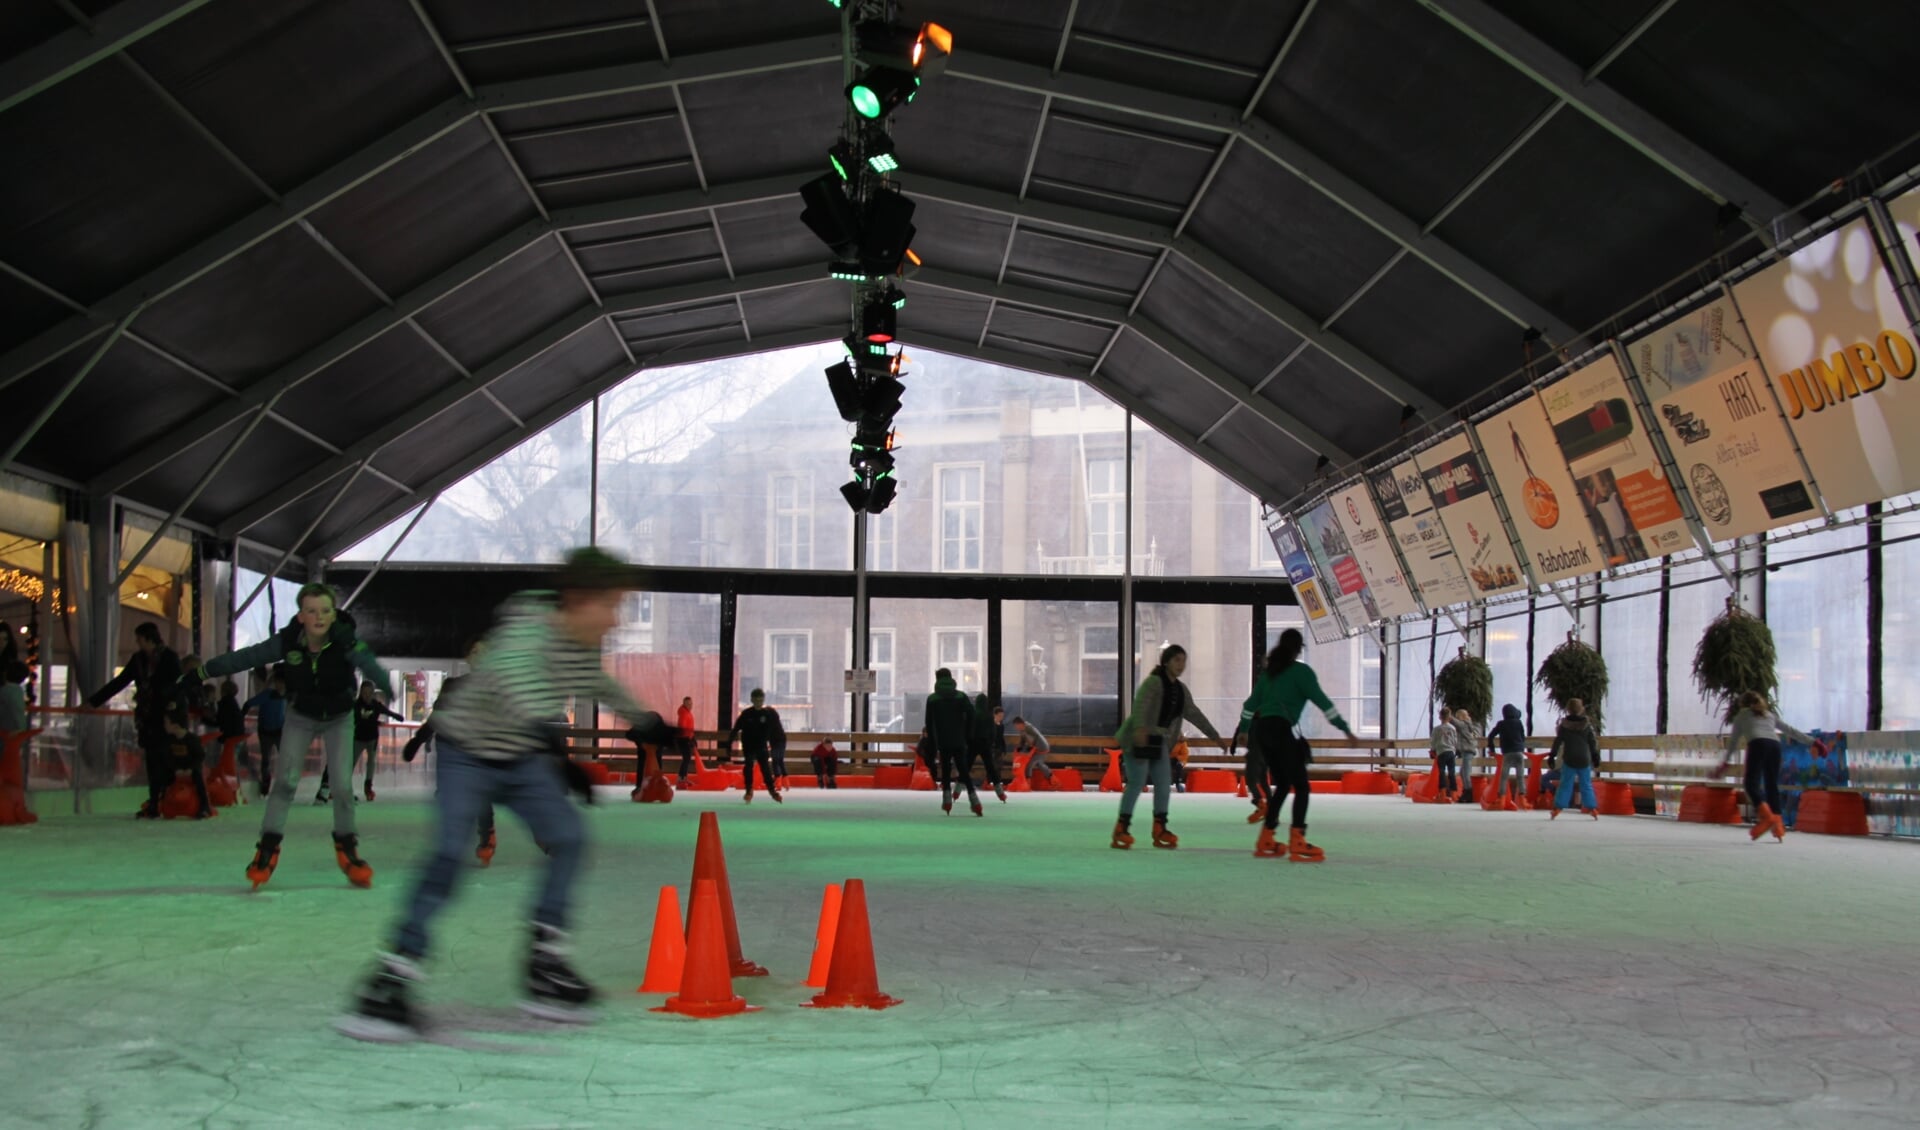 De officiële opening van Veghel on Ice is op vrijdag 6 december.